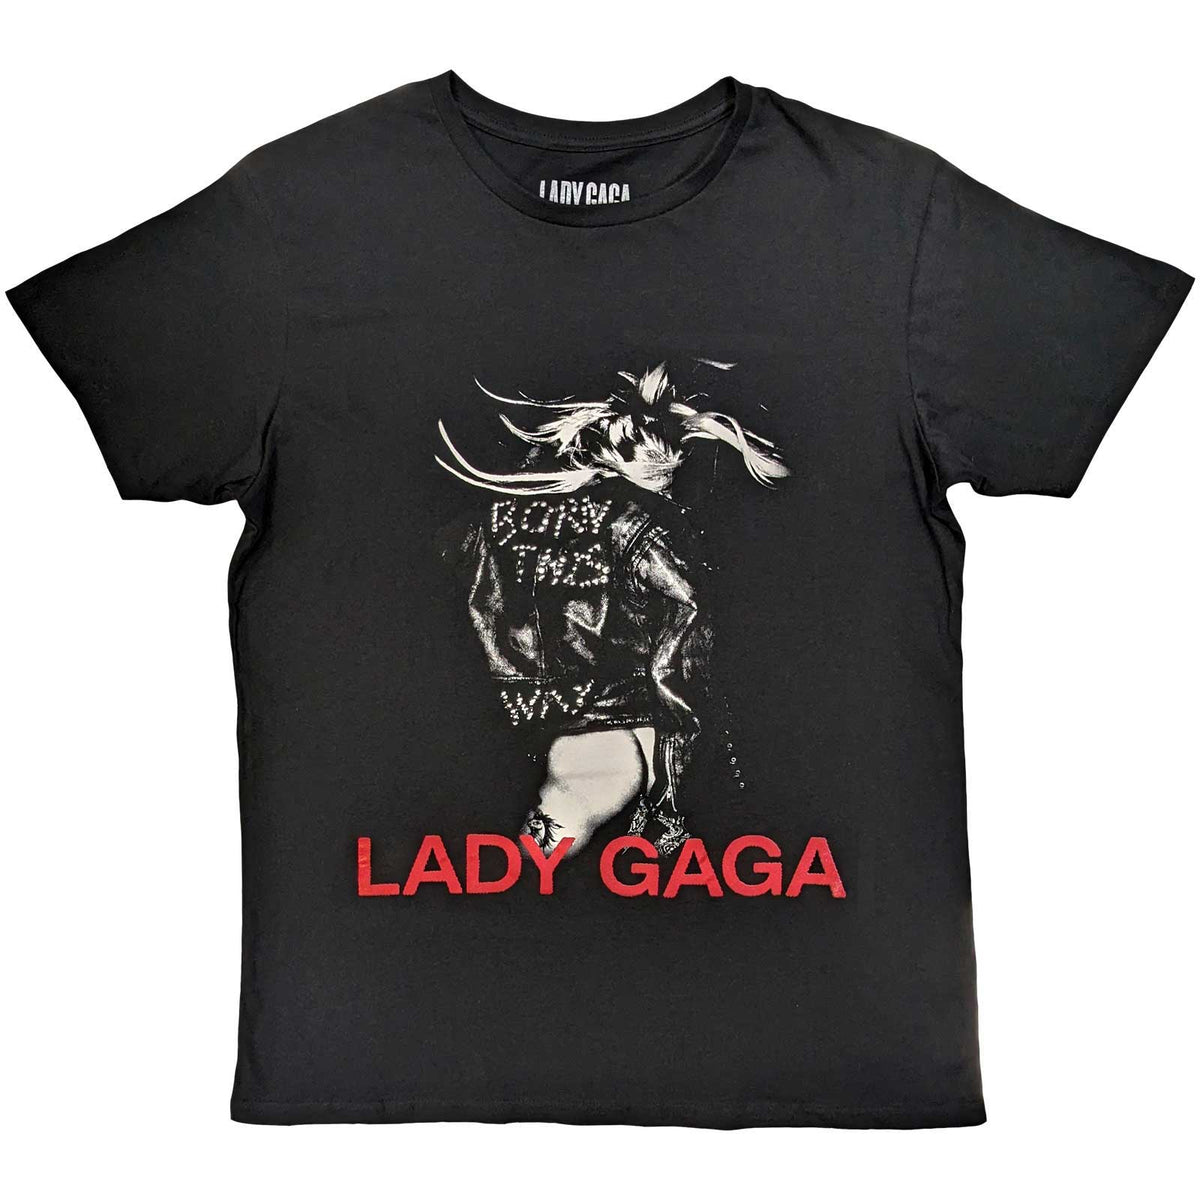 T-shirt Lady Gaga - Veste en cuir - Conception sous licence officielle unisexe